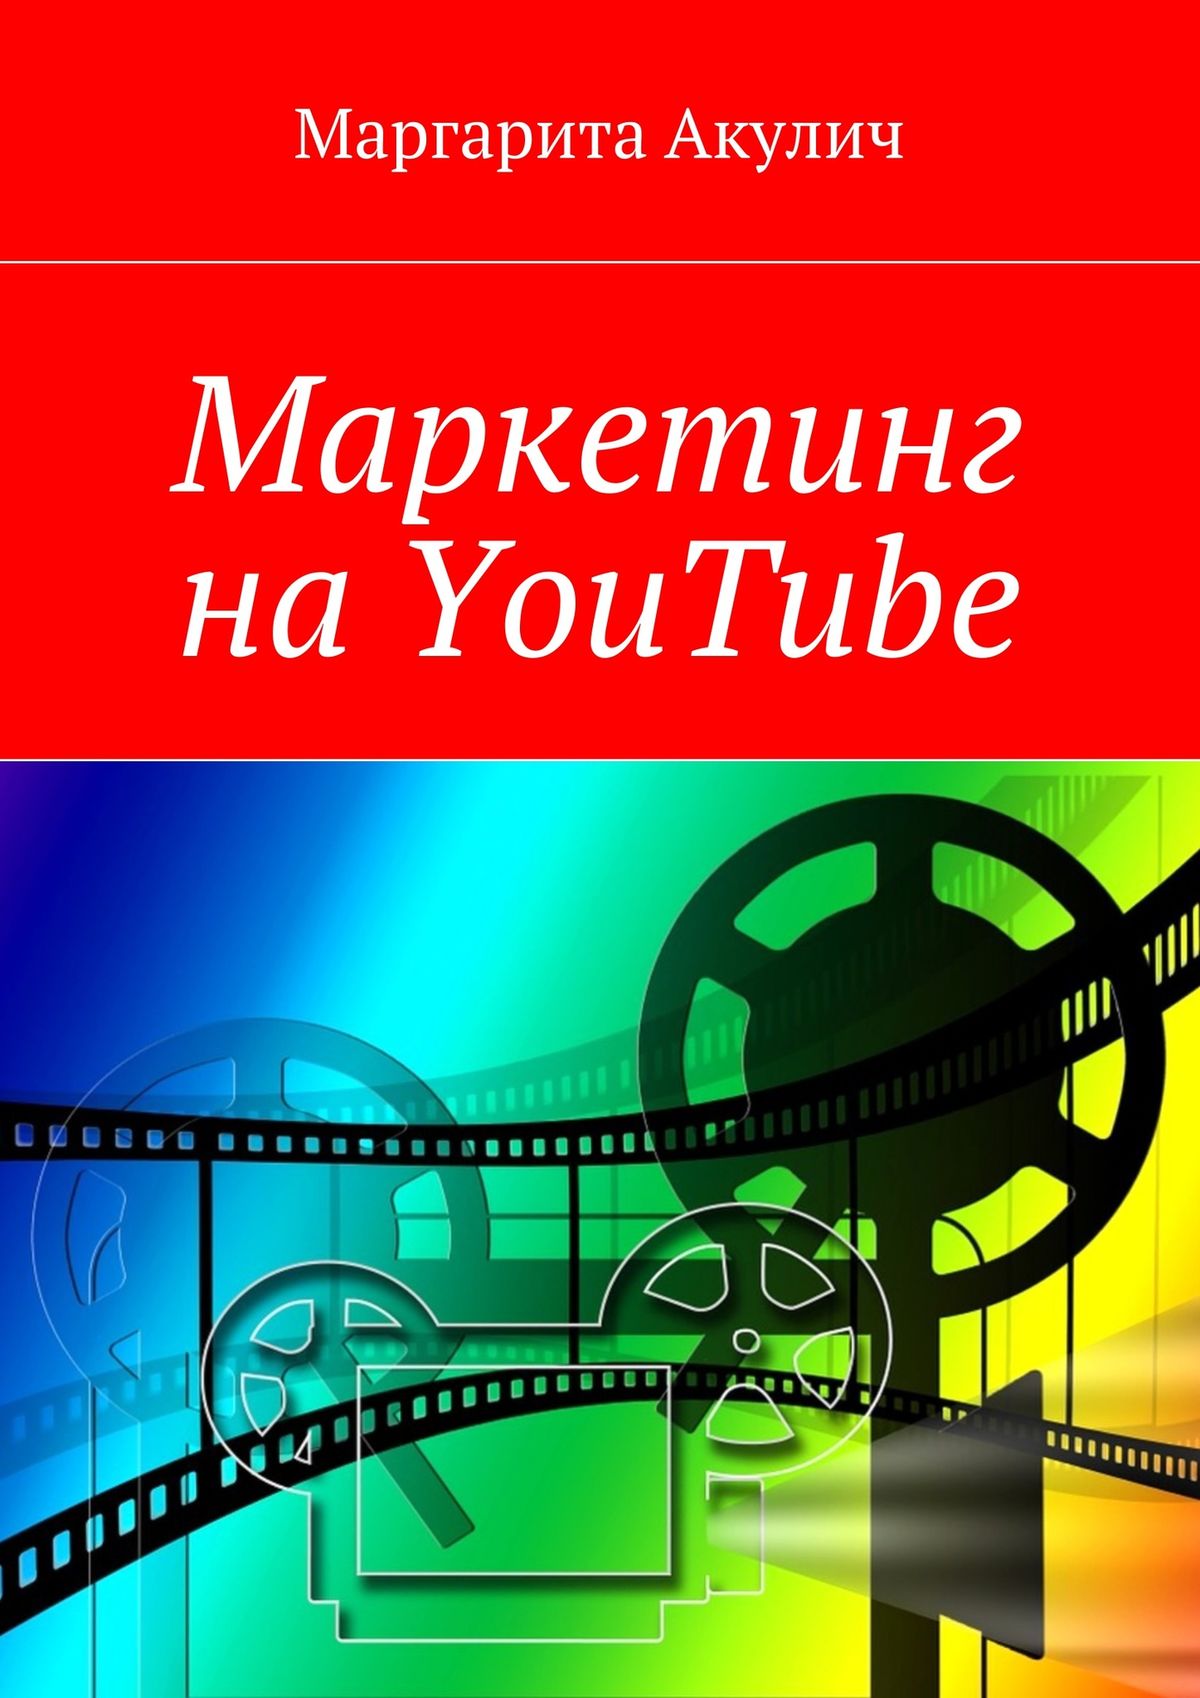 Книга  Маркетинг на YouTube созданная Маргарита Акулич может относится к жанру интернет-маркетинг, прочая образовательная литература, реклама, стратегия маркетинга. Стоимость электронной книги Маркетинг на YouTube с идентификатором 33573461 составляет 180.00 руб.